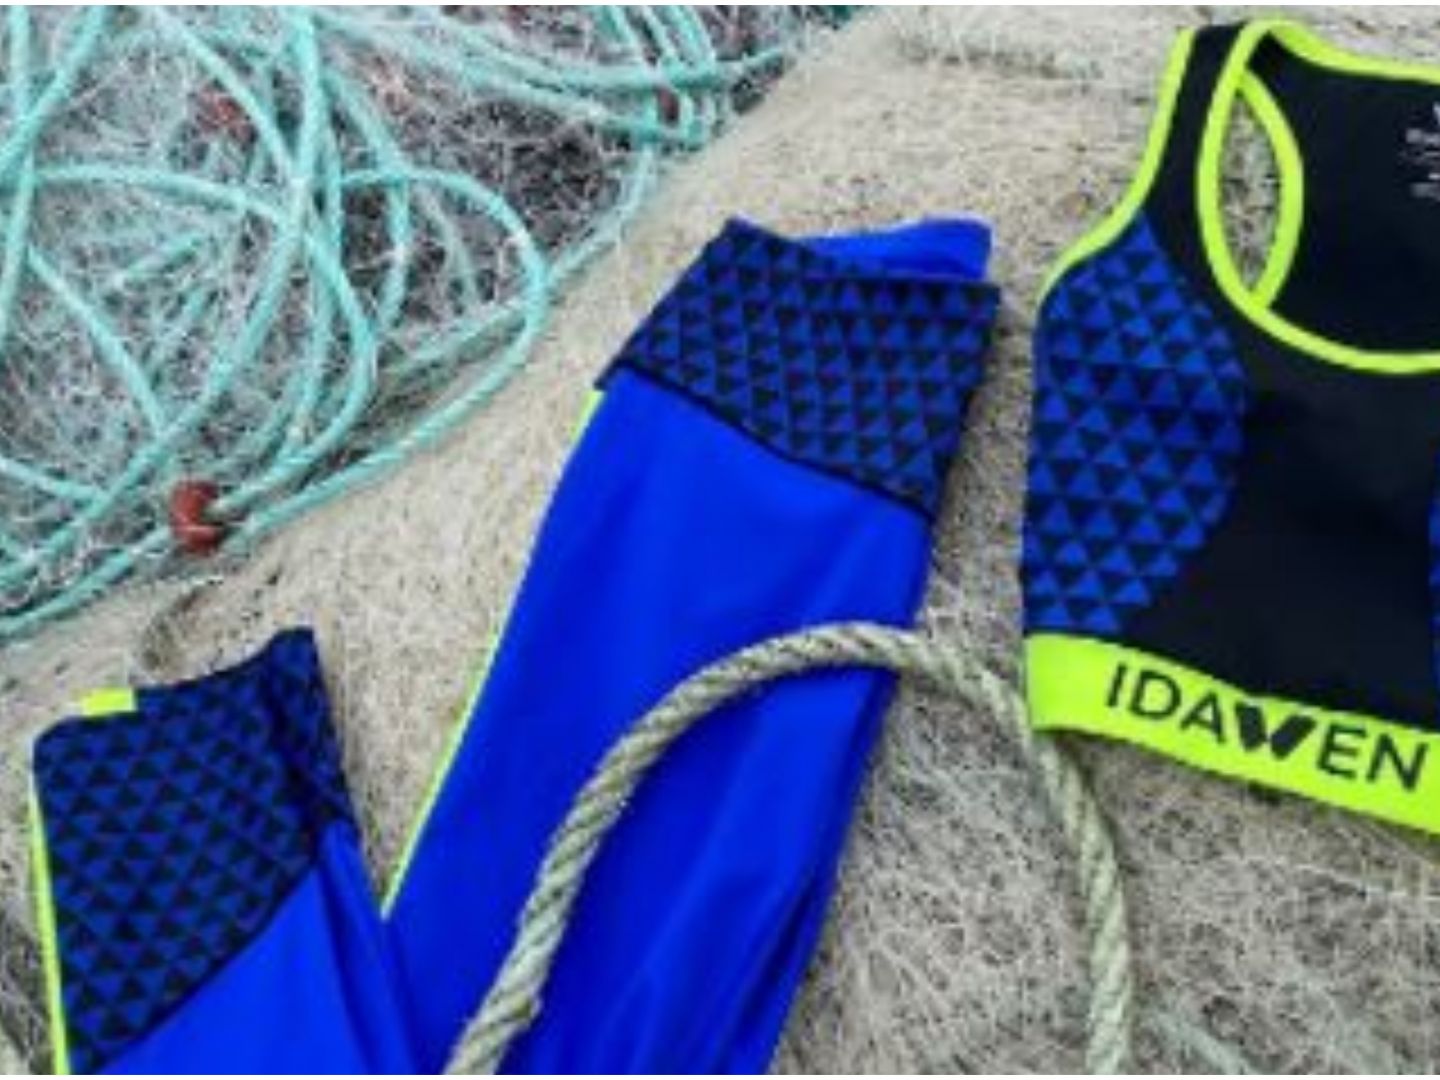 Bergantín Transitorio Calígrafo La marca gallega Idawen crea ropa deportiva sostenible a base de reciclar  redes de pesca